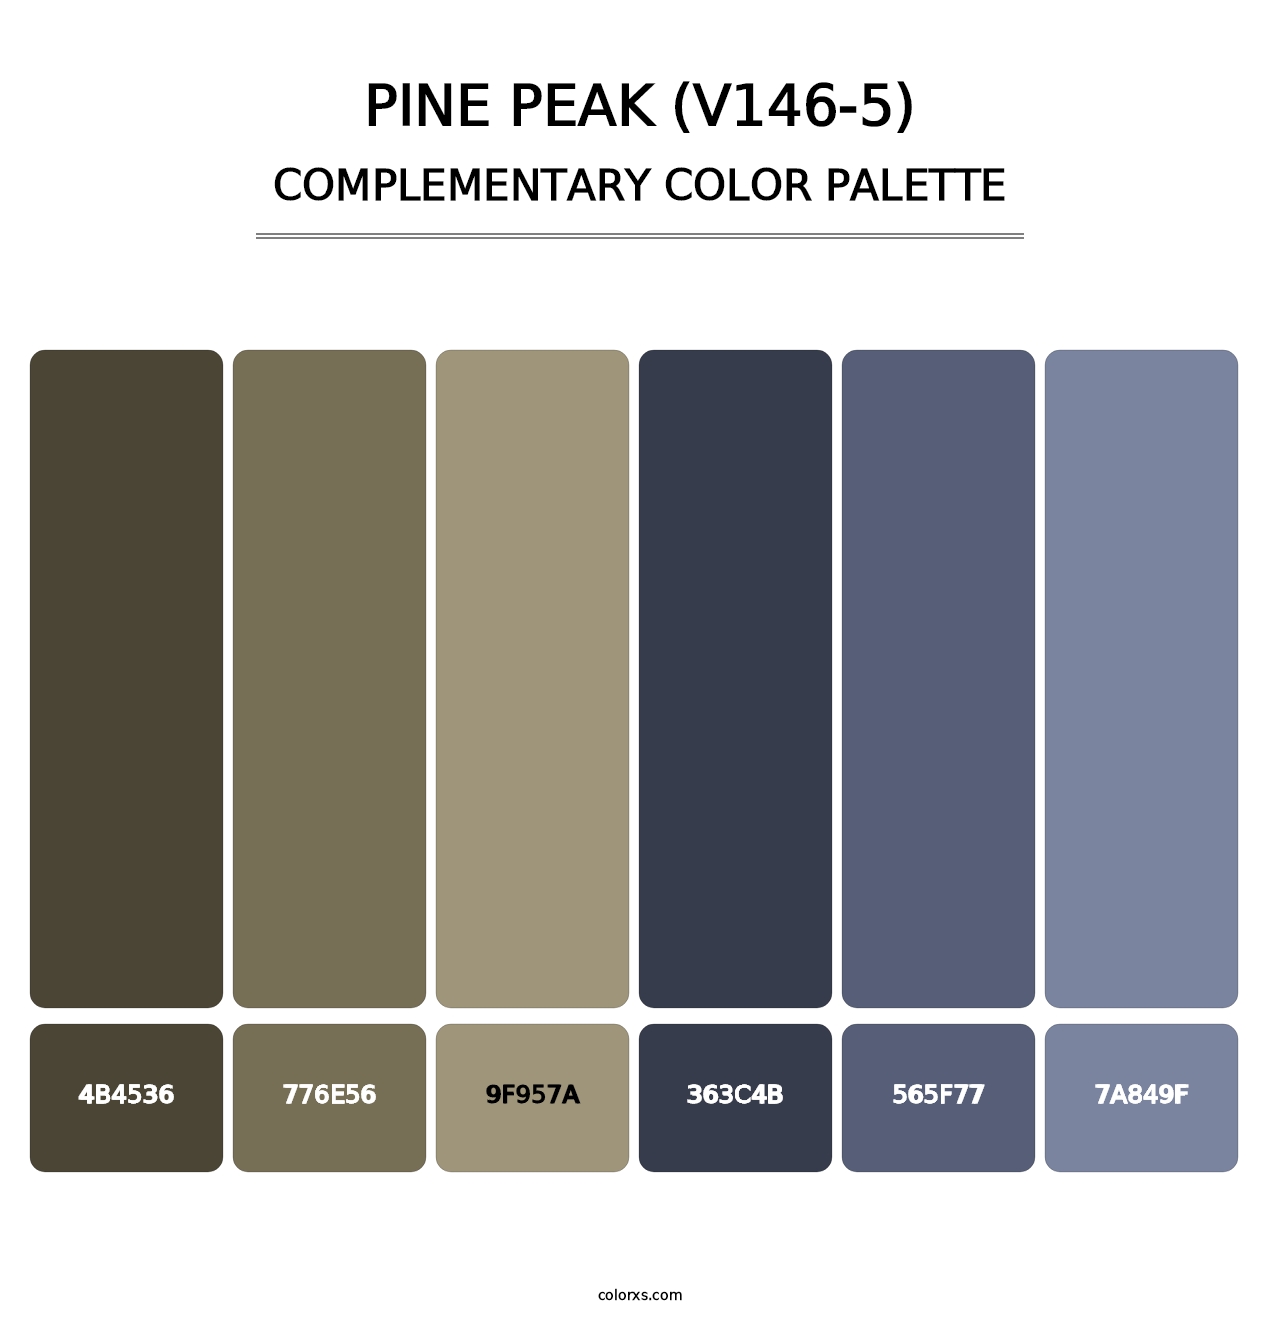 Pine Peak (V146-5) - Complementary Color Palette